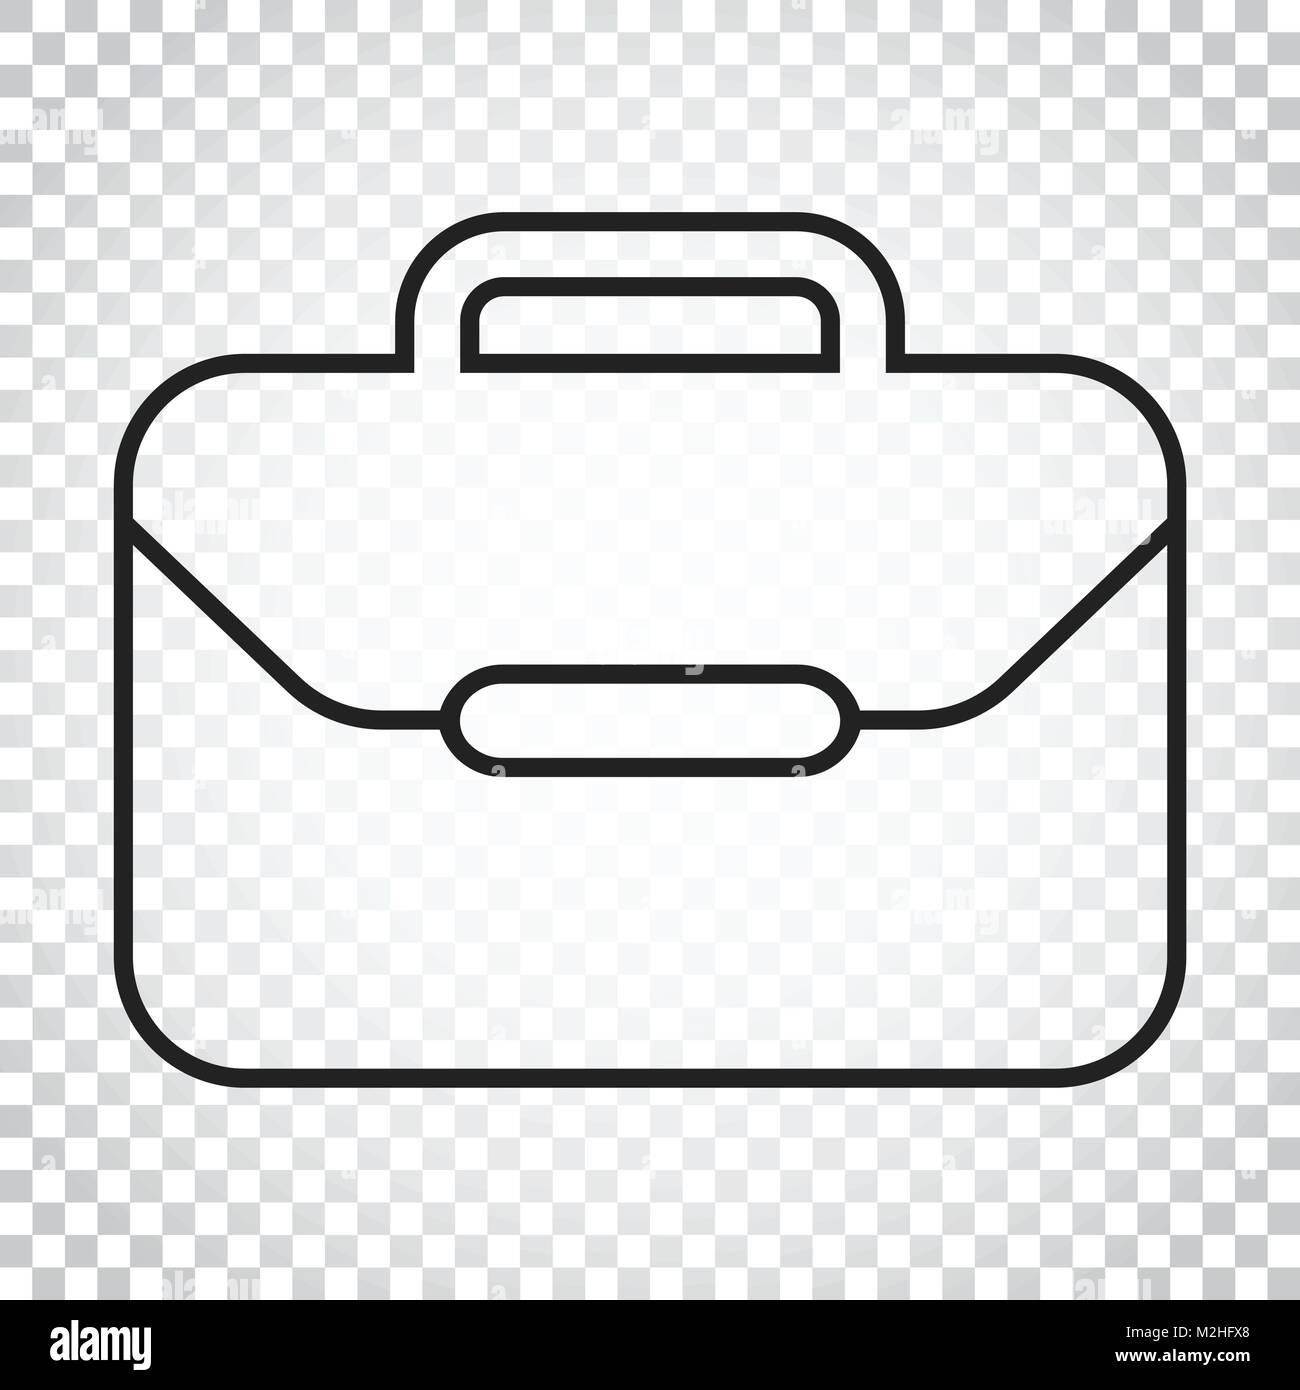 Koffer Vektor icon. Gepäck Abbildung im Einklang Stil. Einfaches  Geschäftskonzept Piktogramm auf isolierten Hintergrund Stock-Vektorgrafik -  Alamy